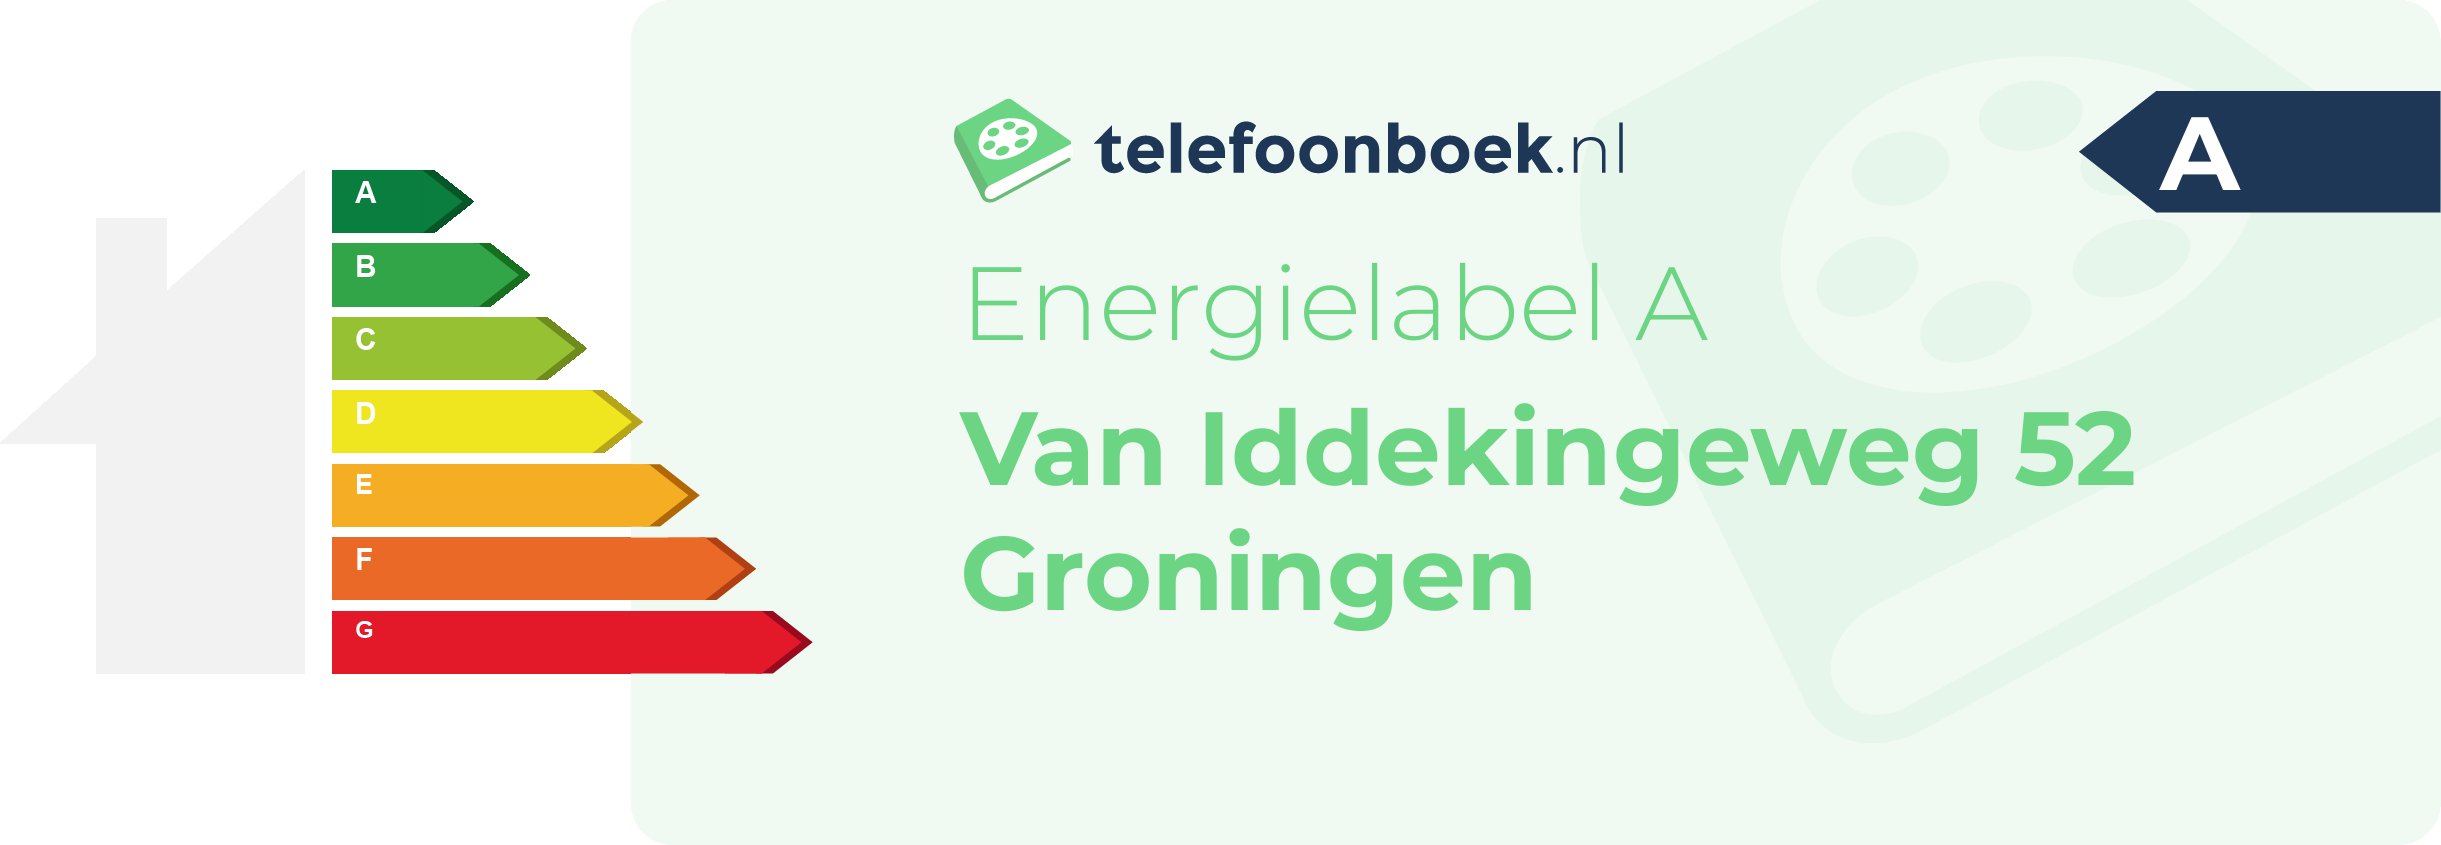 Energielabel Van Iddekingeweg 52 Groningen